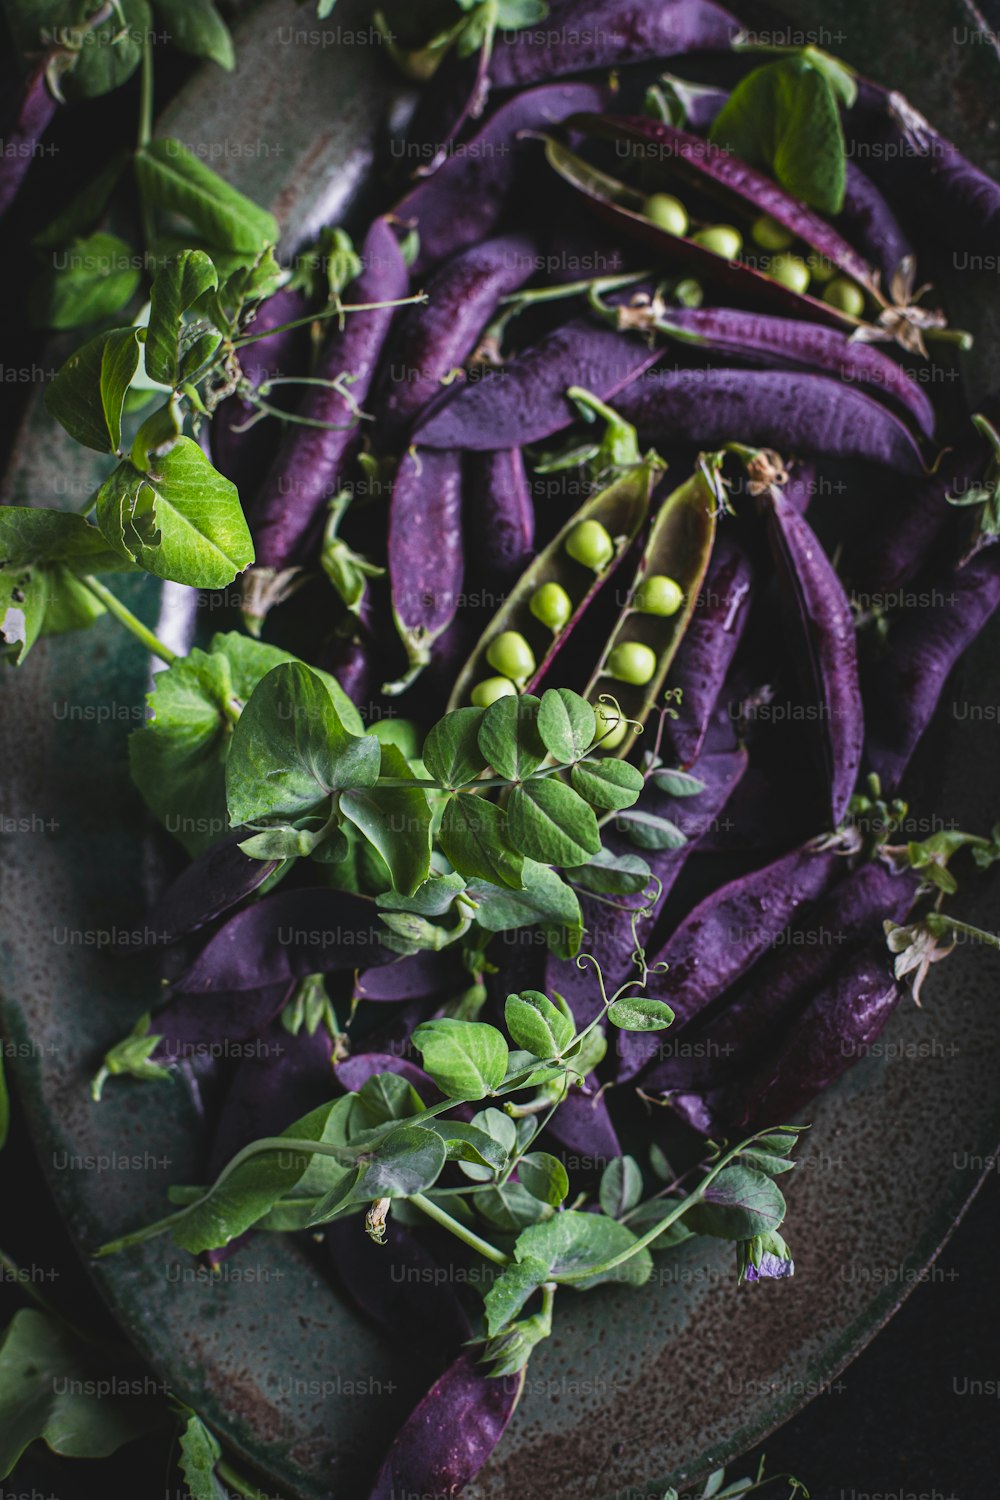 un piatto di verdure viola con foglie verdi